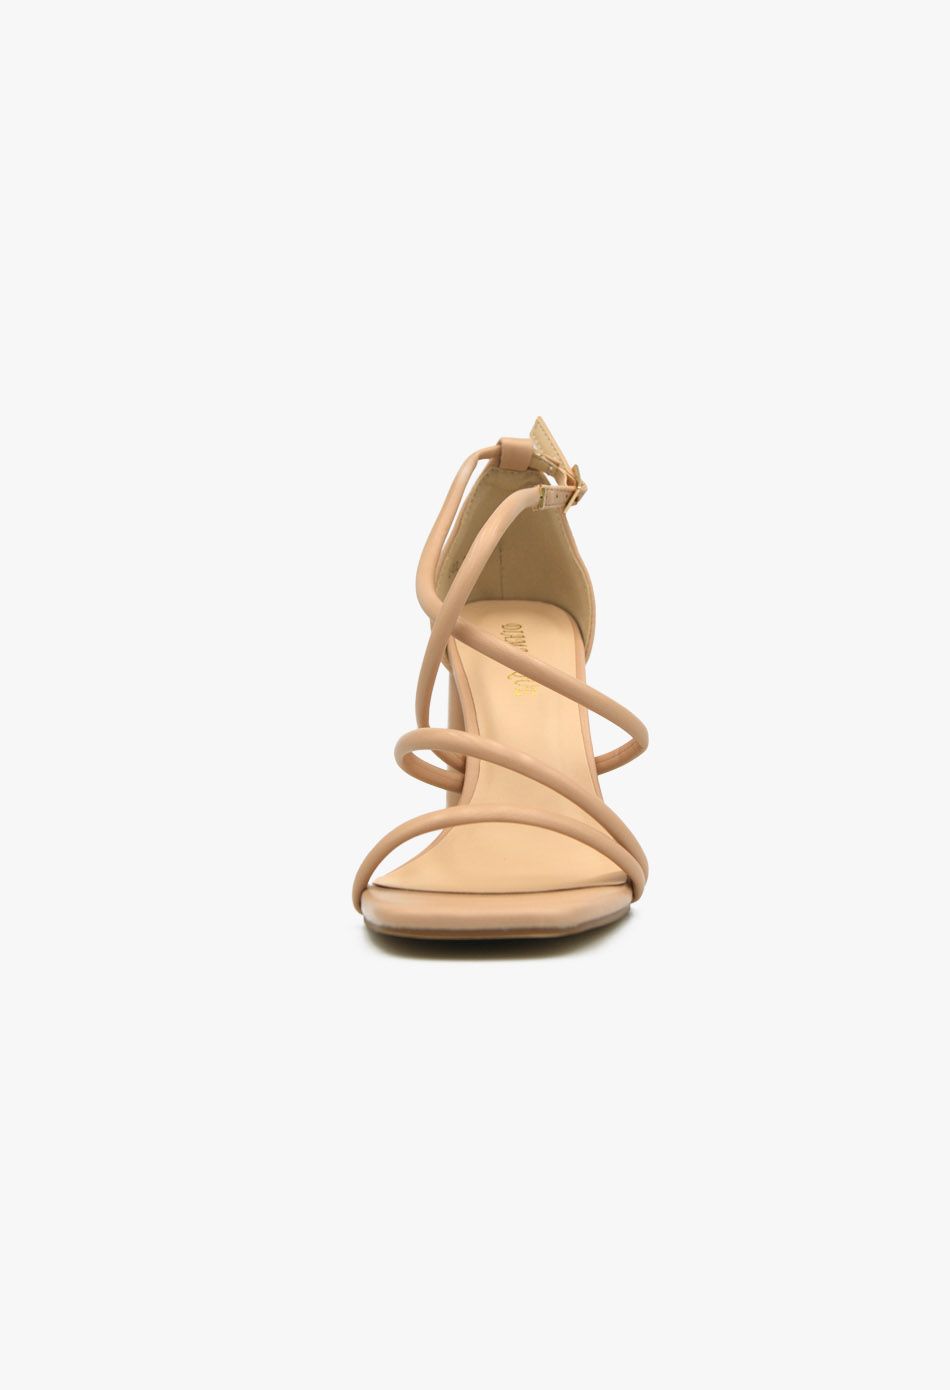 Πέδιλα Λουστρίνι με Λουράκια και Χοντρό Ψηλό Τακούνι Μπεζ / Z-02-nude Ανοιχτά Παπούτσια joya.gr